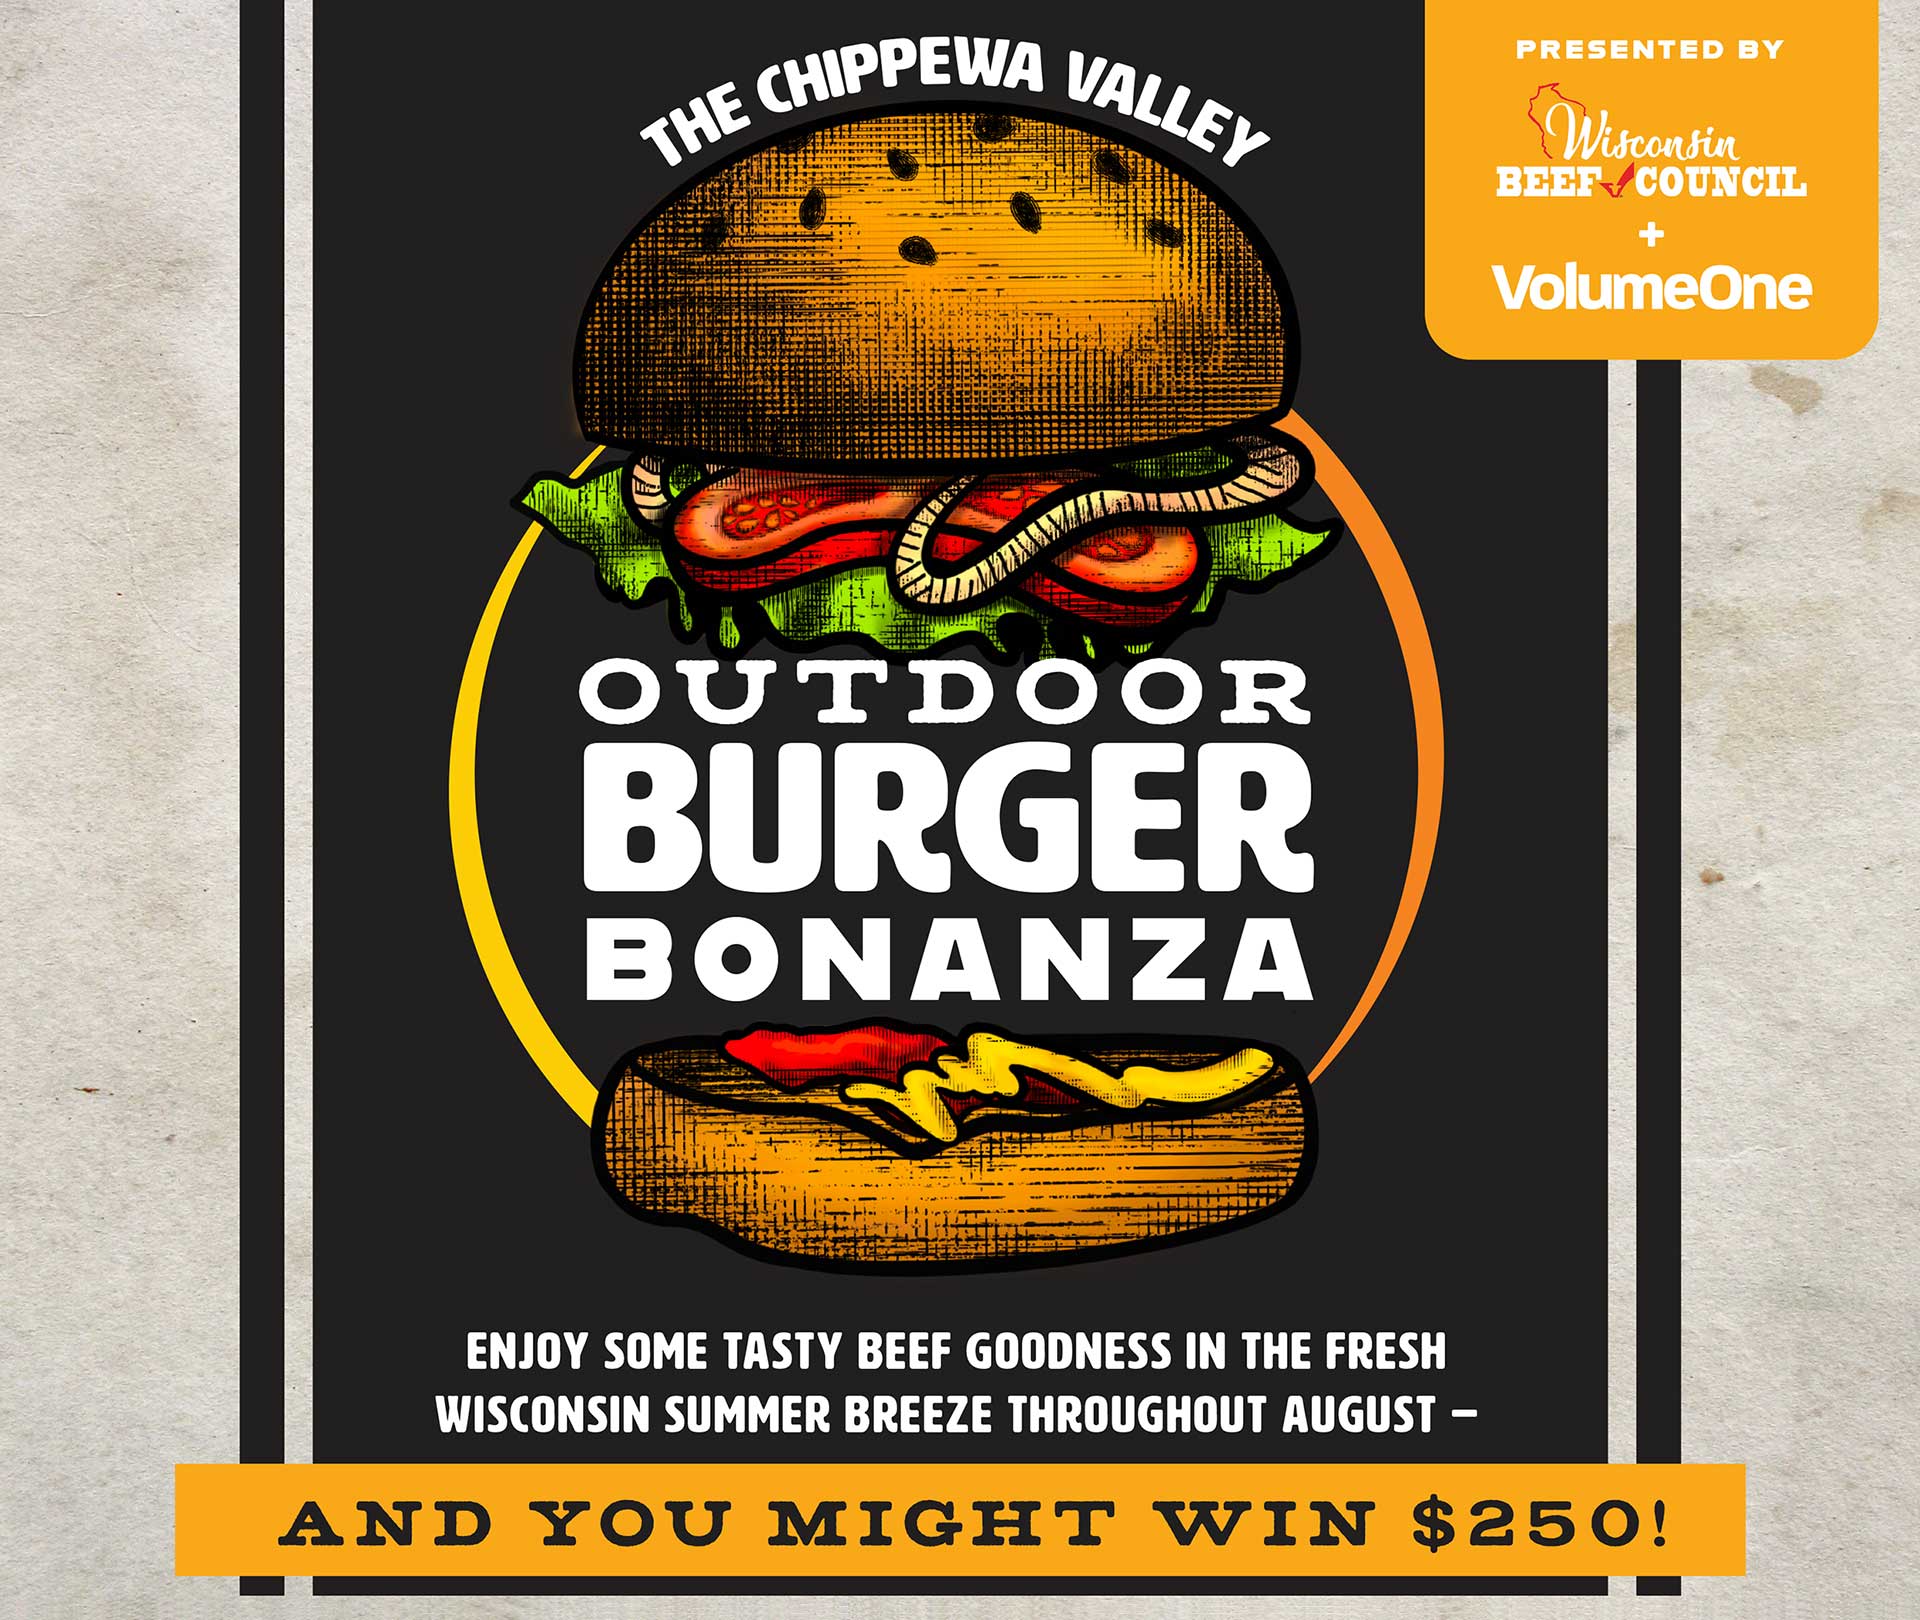 Chippewa Valley Outdoor Burger Bonanza